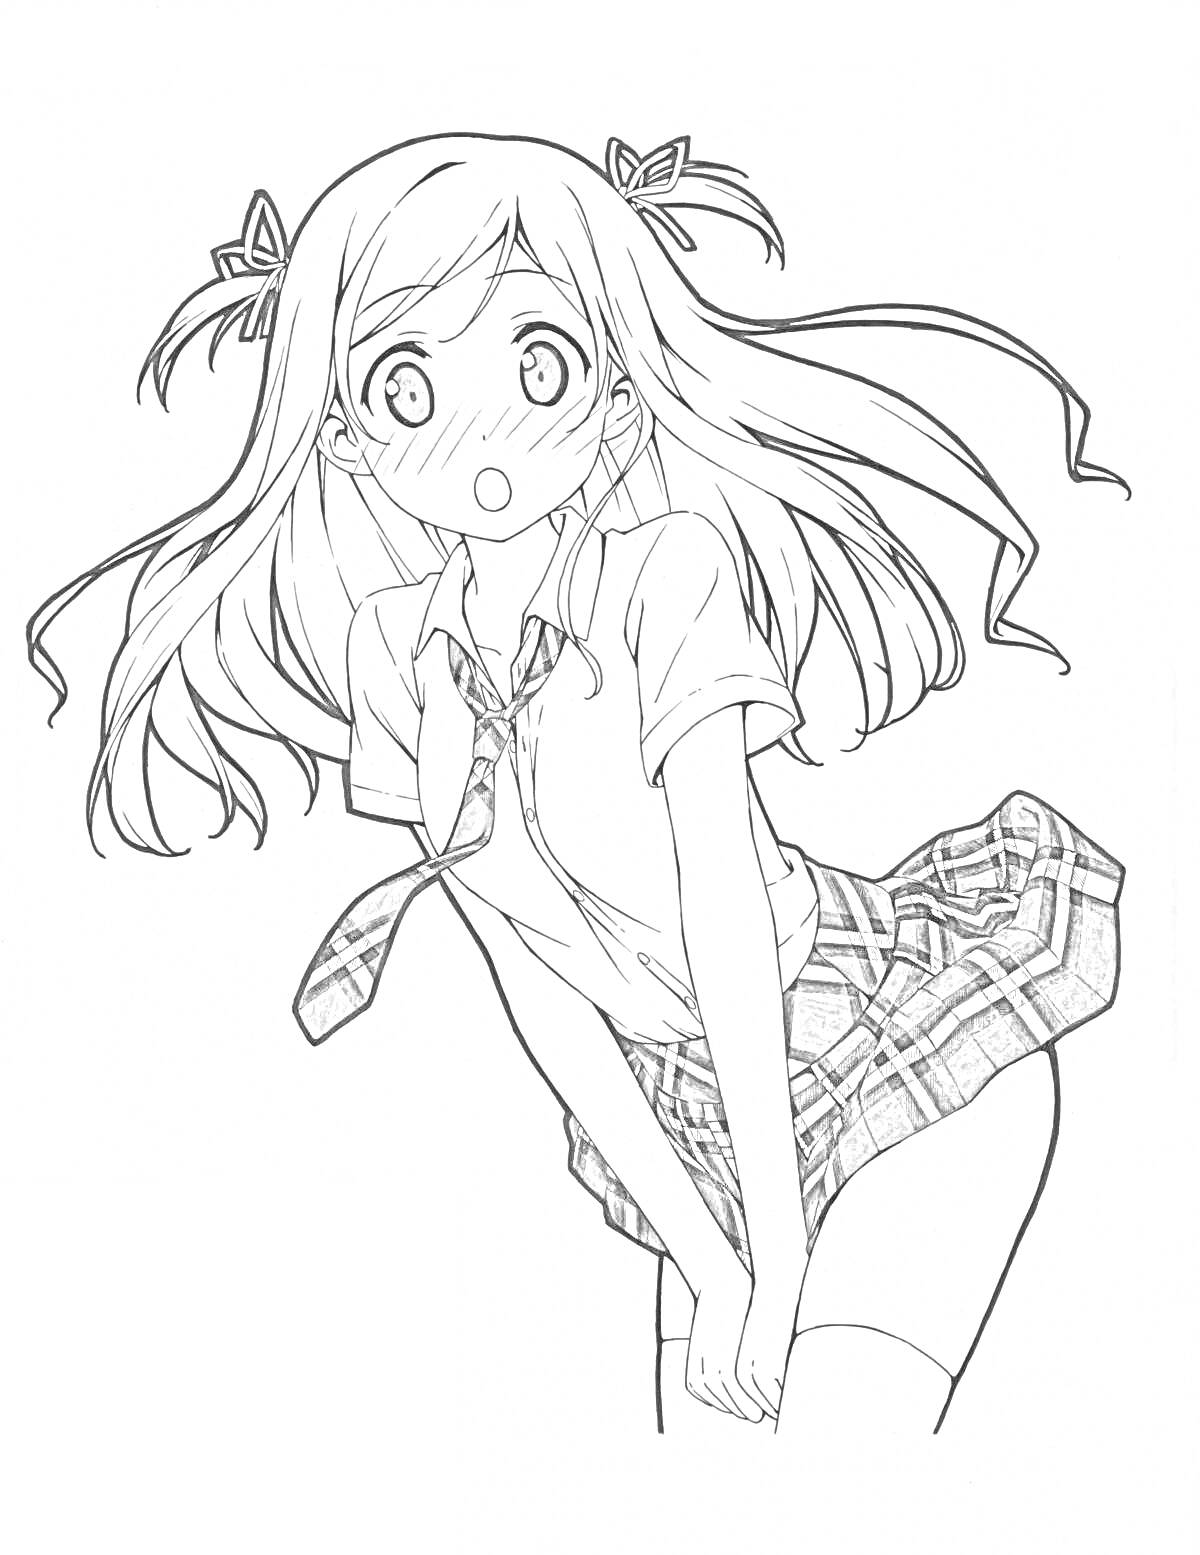 Раскраска Девочка аниме в школьной форме с длинными волосами и бантиками, удивлённое выражение лица